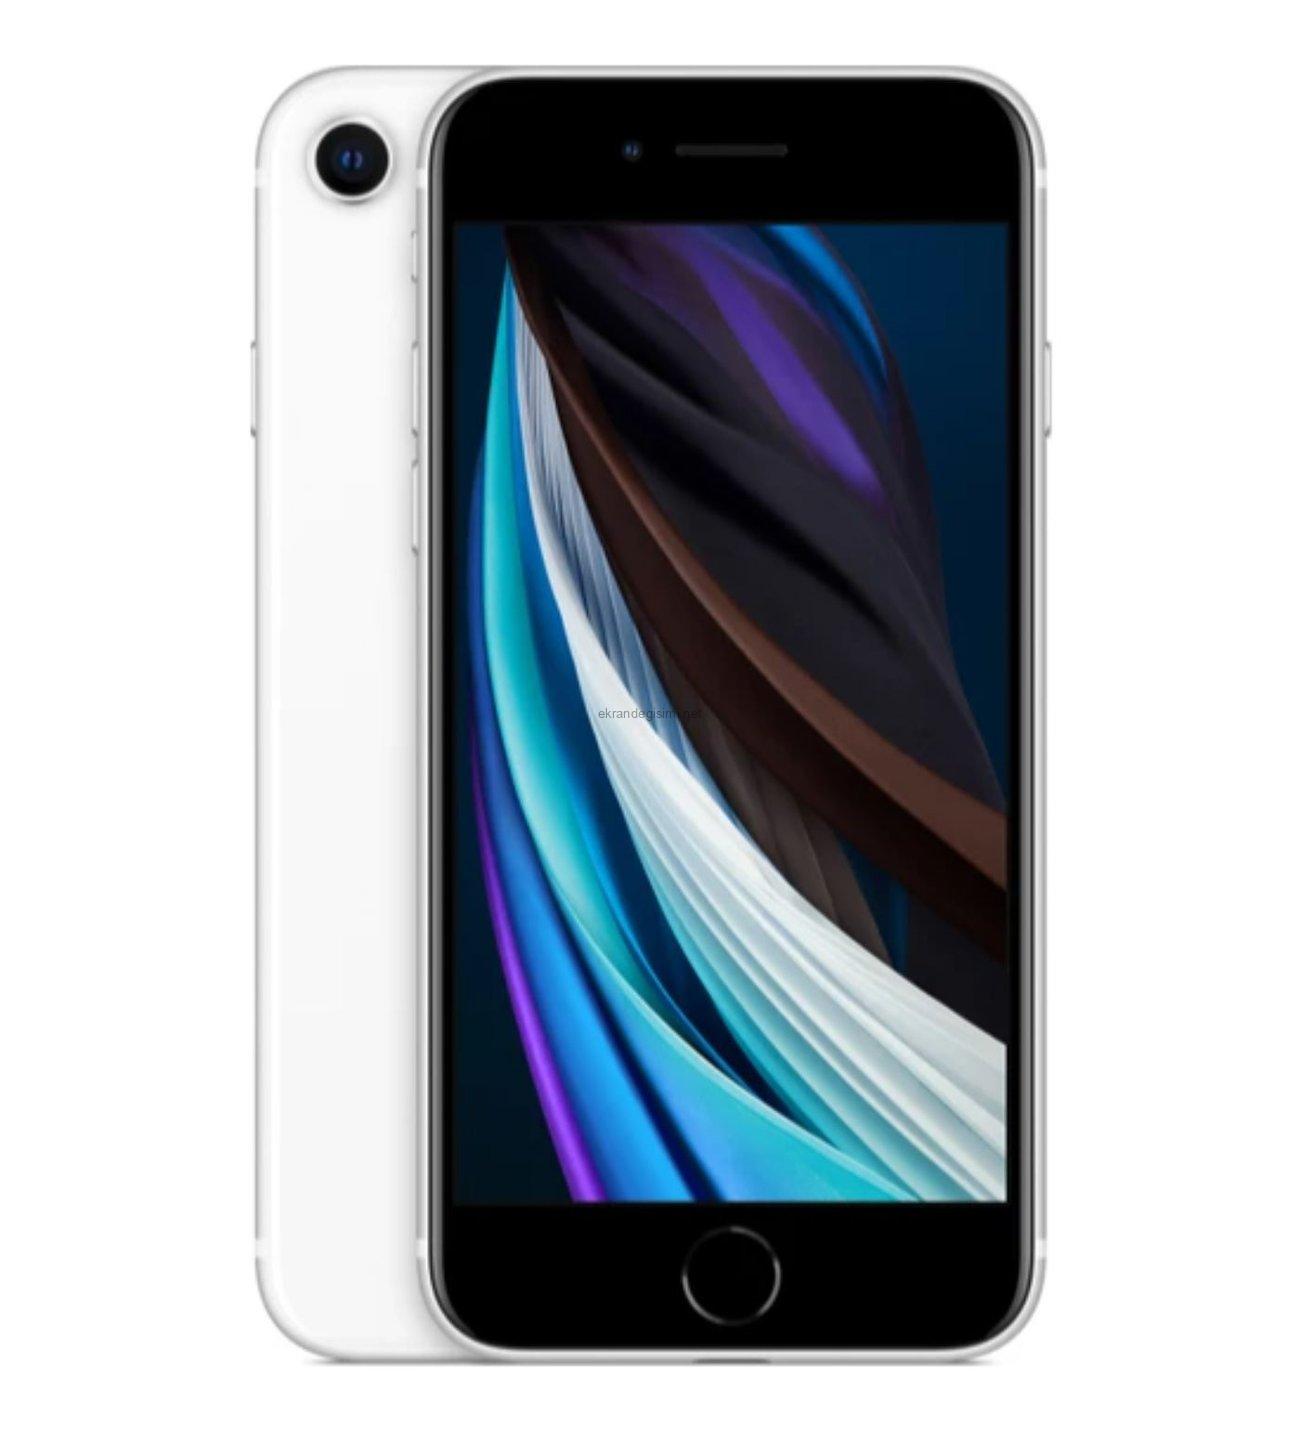 Apple iPhone SE 2 (2020) Ekran Değişim Fiyatı Kaç TL?